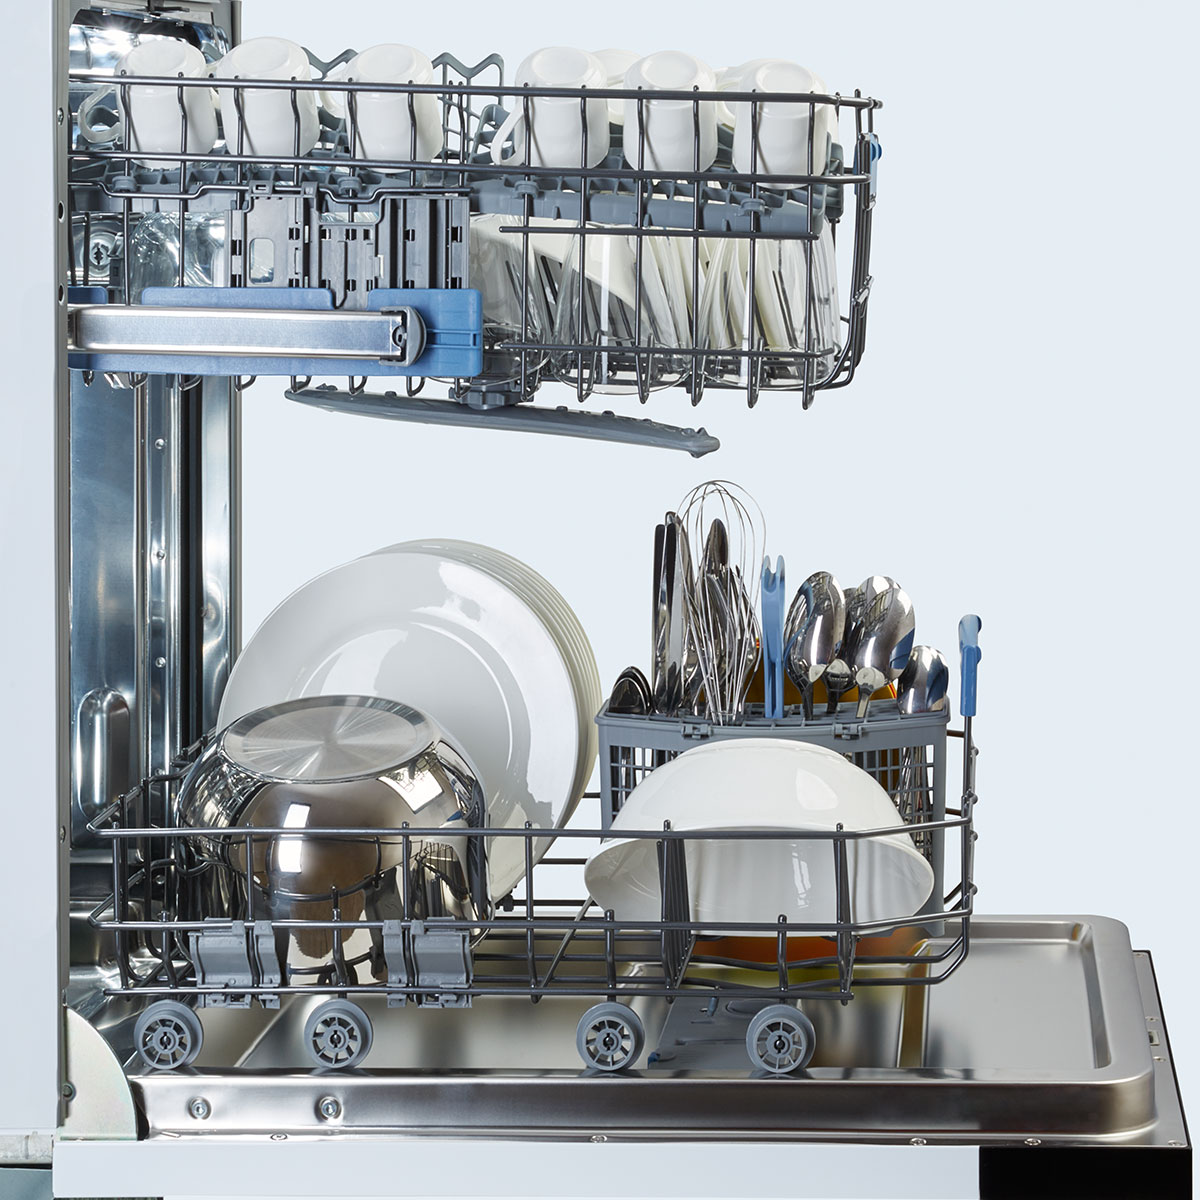 Посудомоечные машинки 45. Посудомоечная машина Freggia dwi4106. Посудомоечная машина Smeg st321-1. Посудомойка 45 см. Посудомоечная машина Beko Dwi 645.